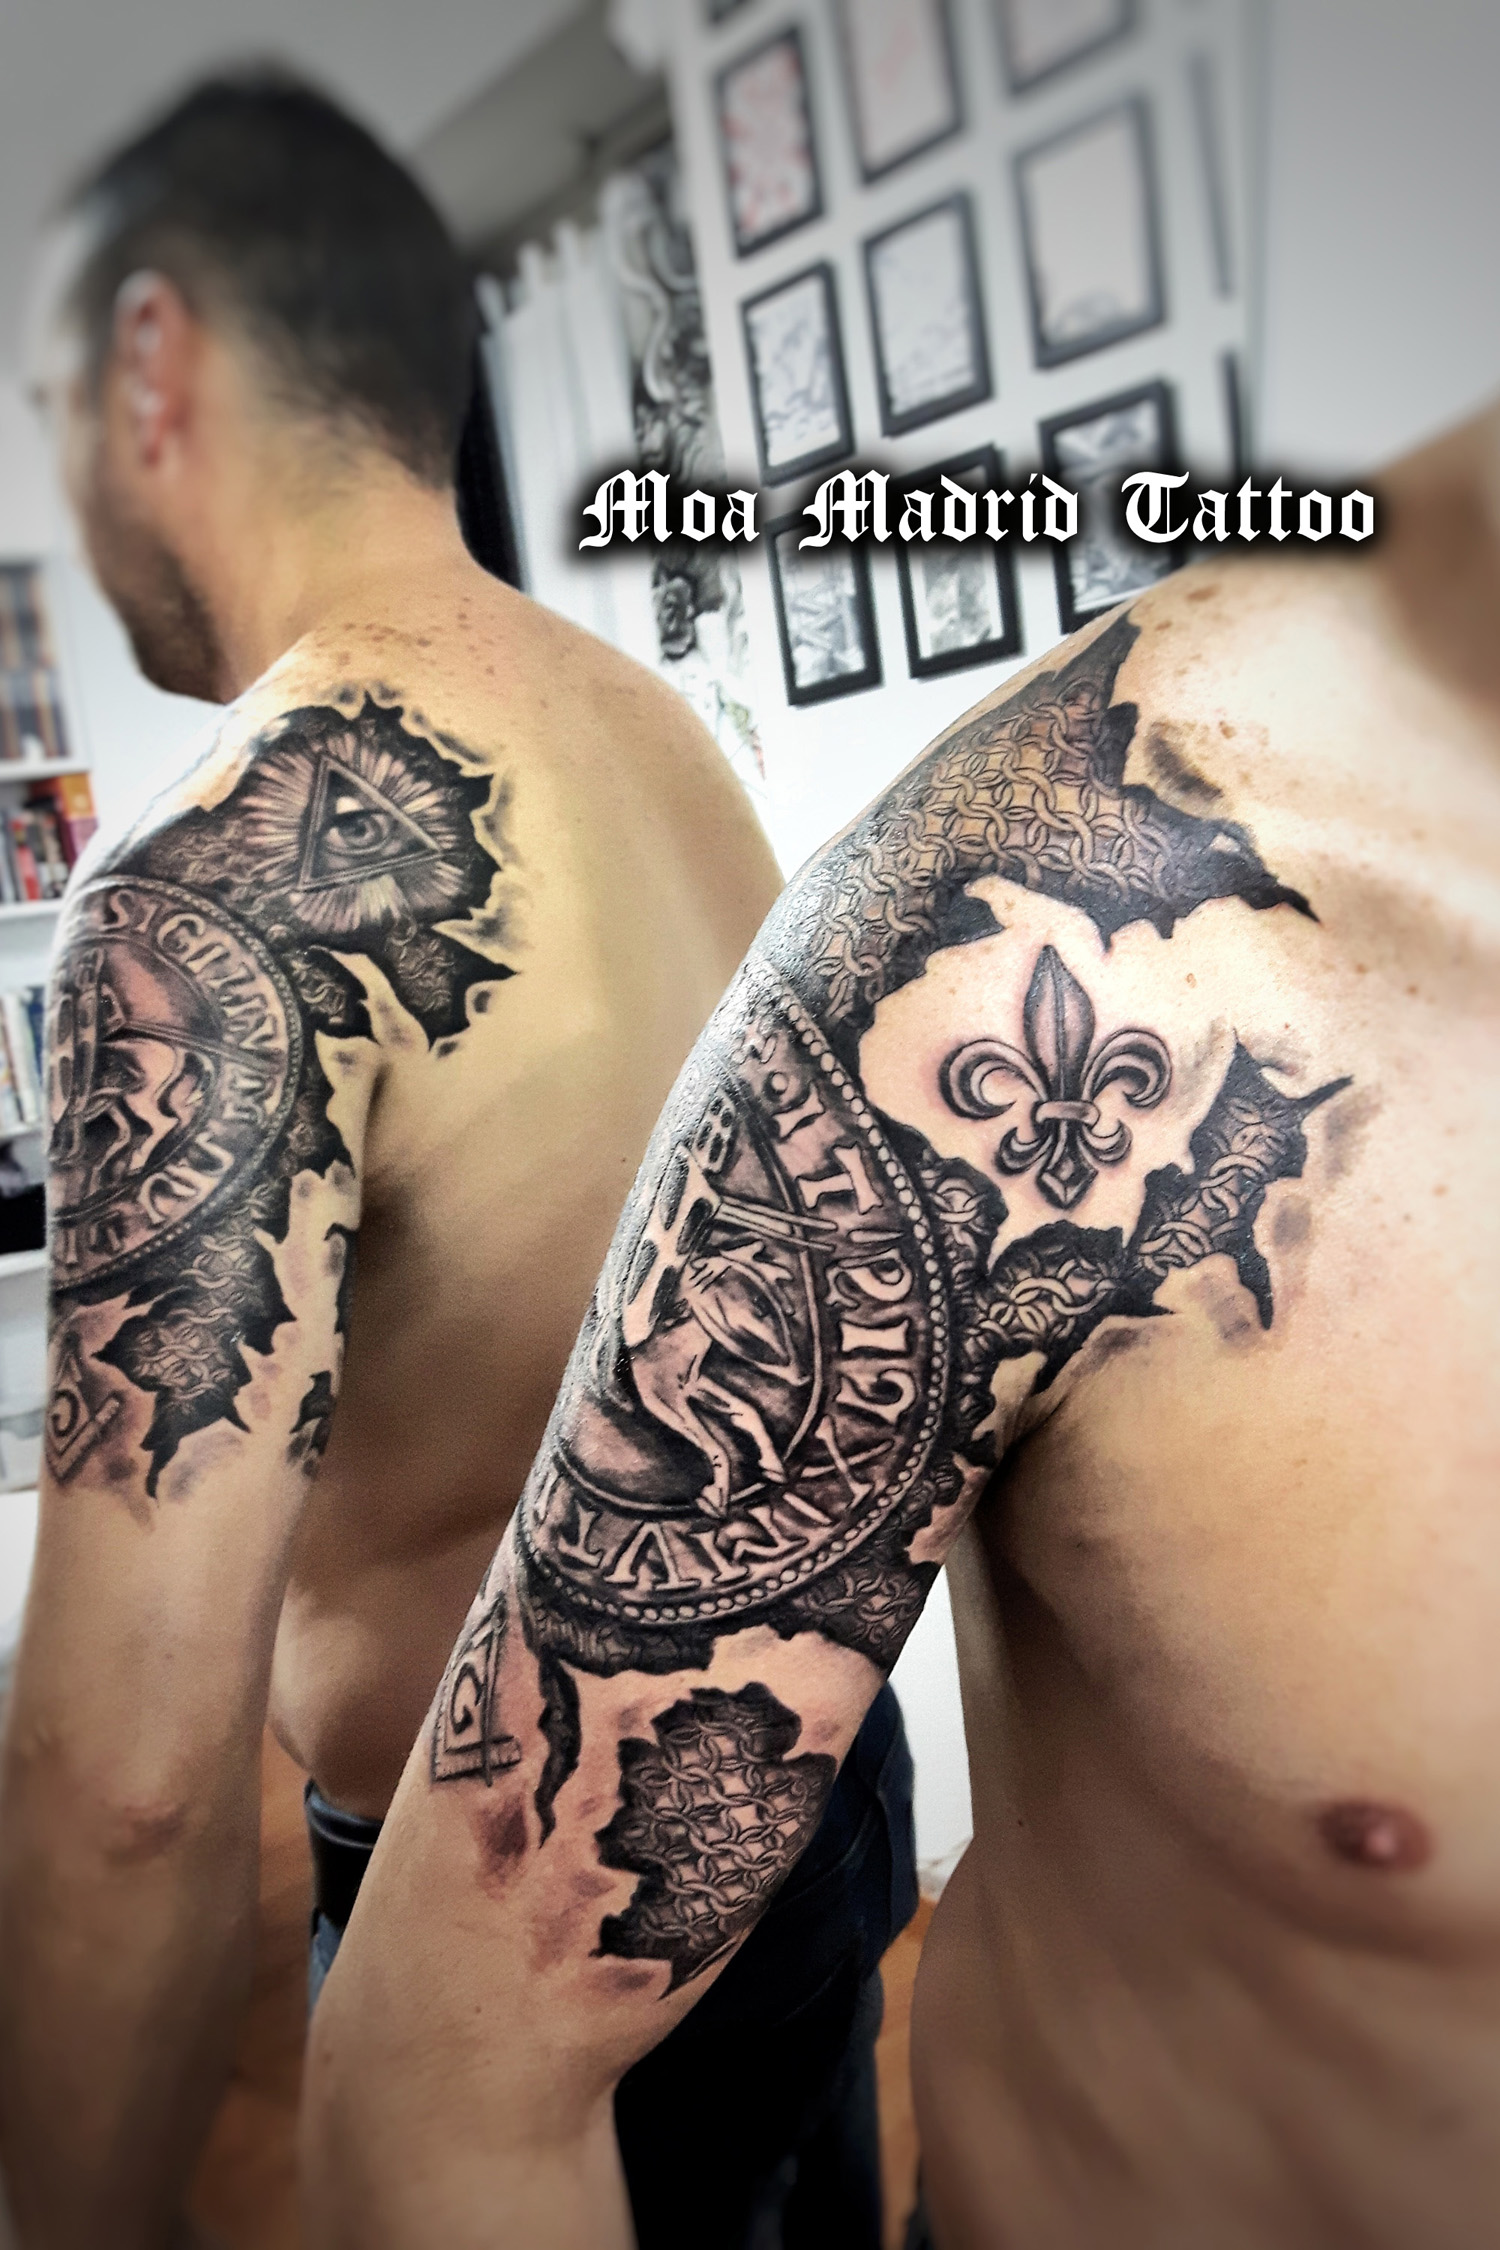 Tatuaje en realismo dedicado a la Orden de Caballería del Temple en Madrid>